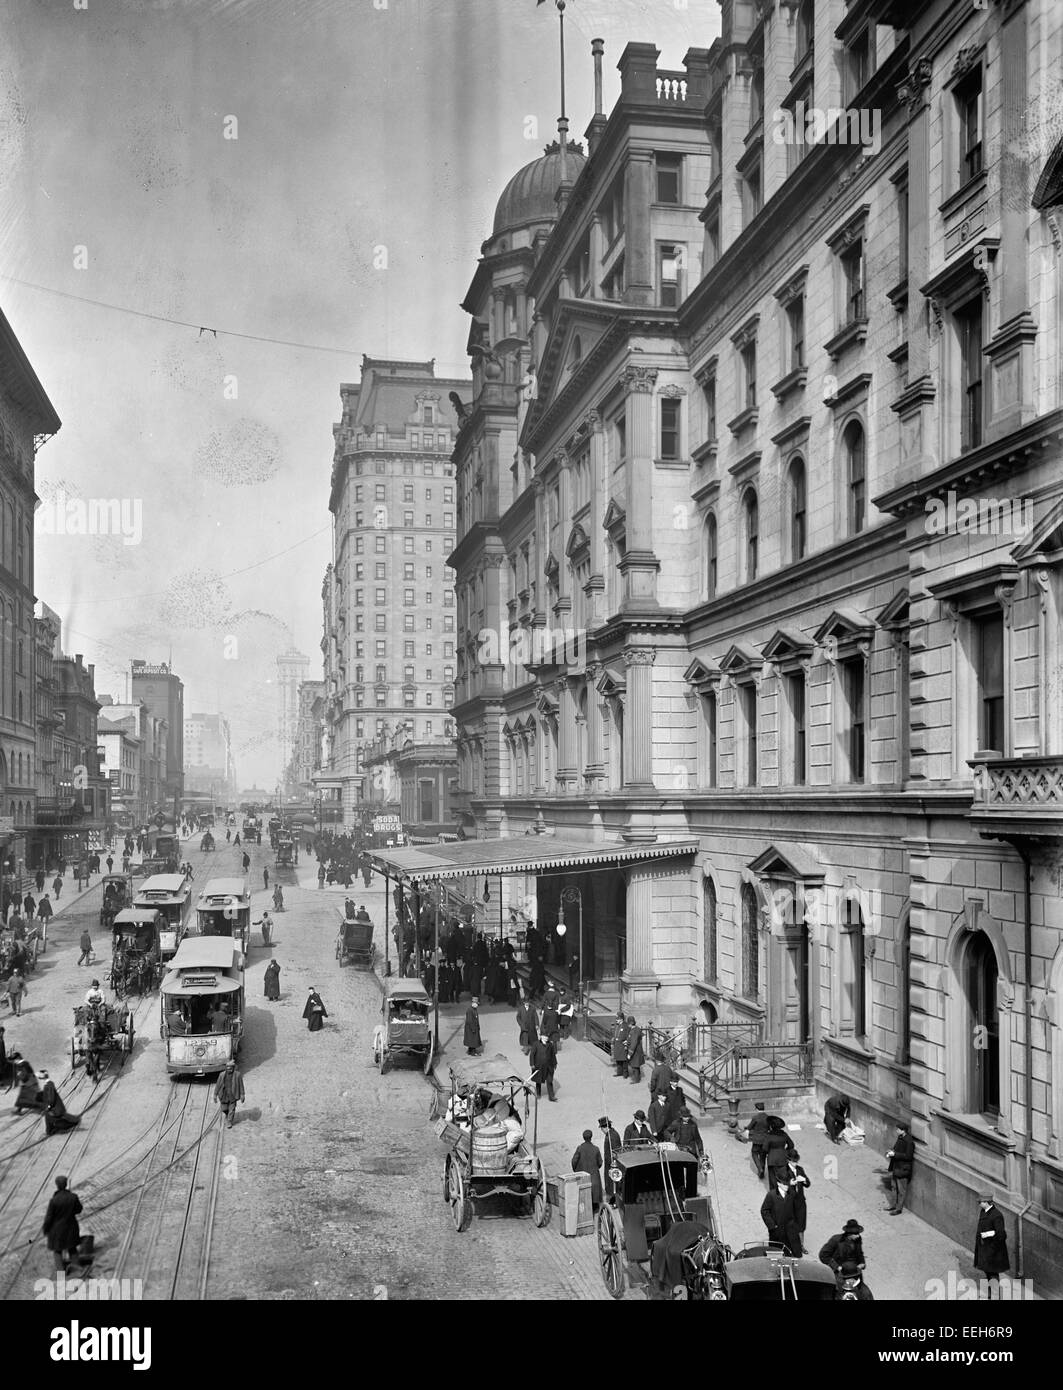 La ville de New York, le Shatow, 42e Rue, montrant entrée de la gare Grand Central, vers 1910 Banque D'Images